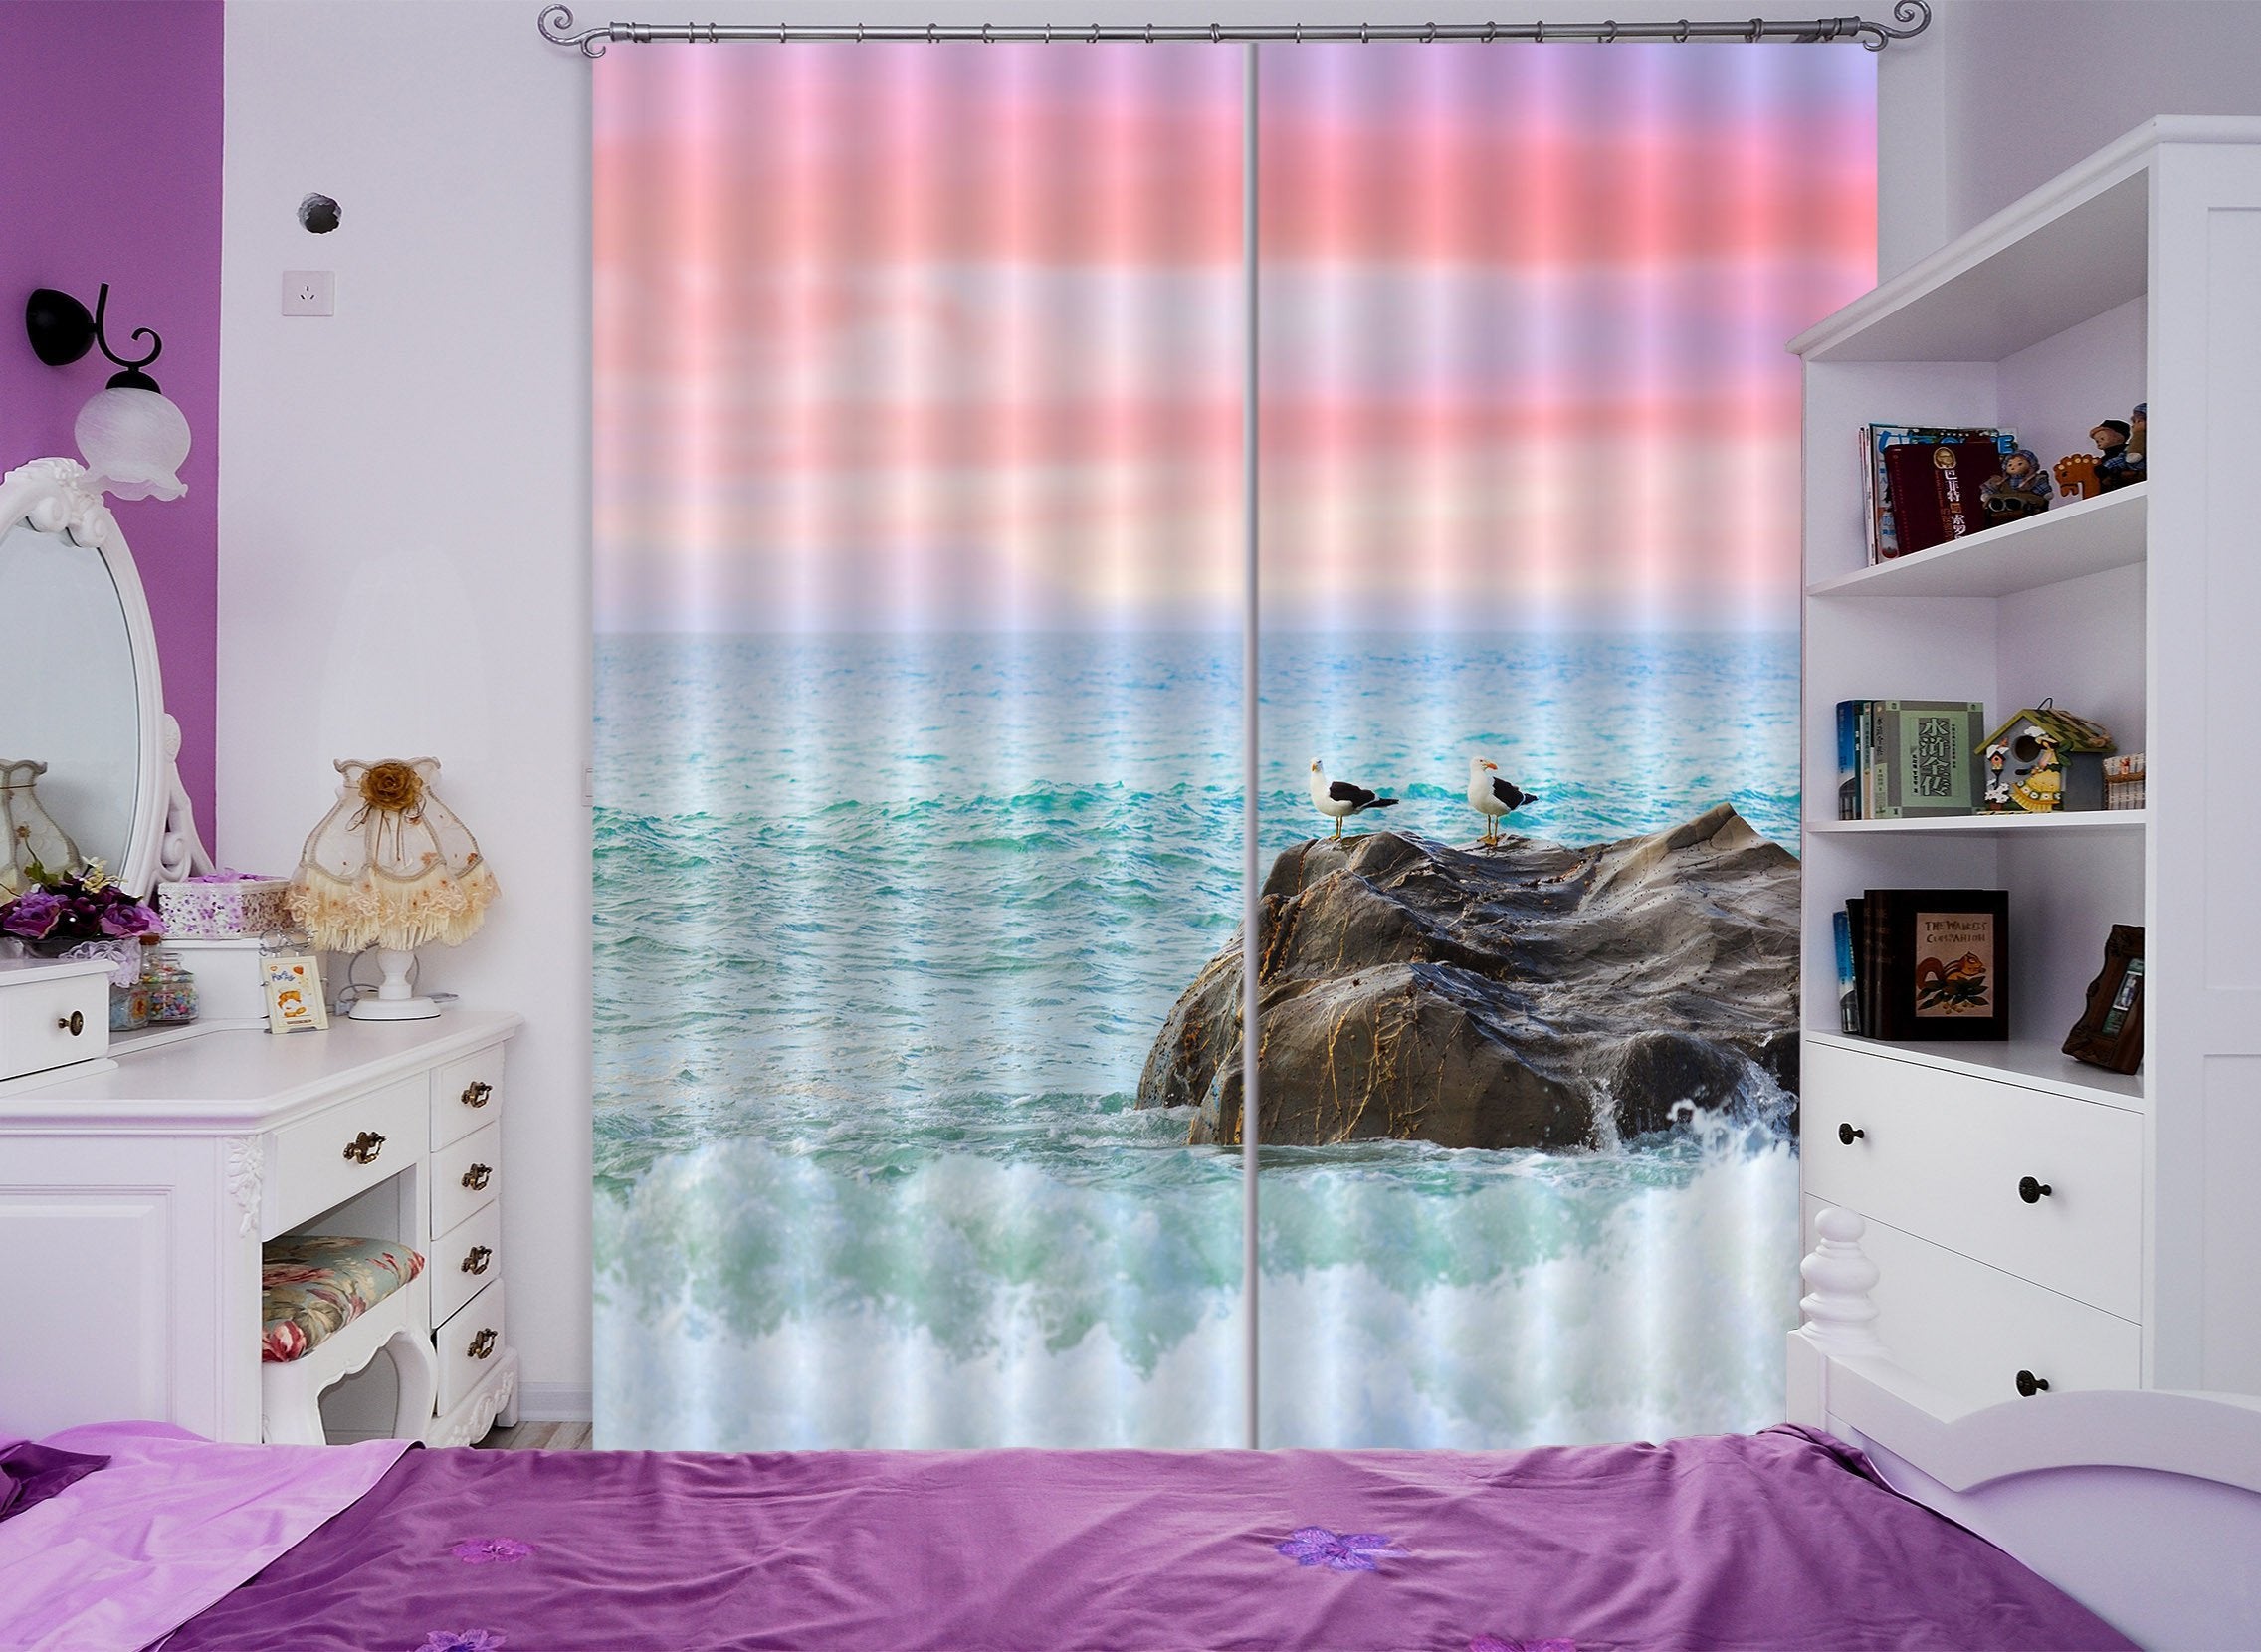 3D Sea Coast Birds 787 Curtains Drapes Wallpaper AJ Wallpaper 